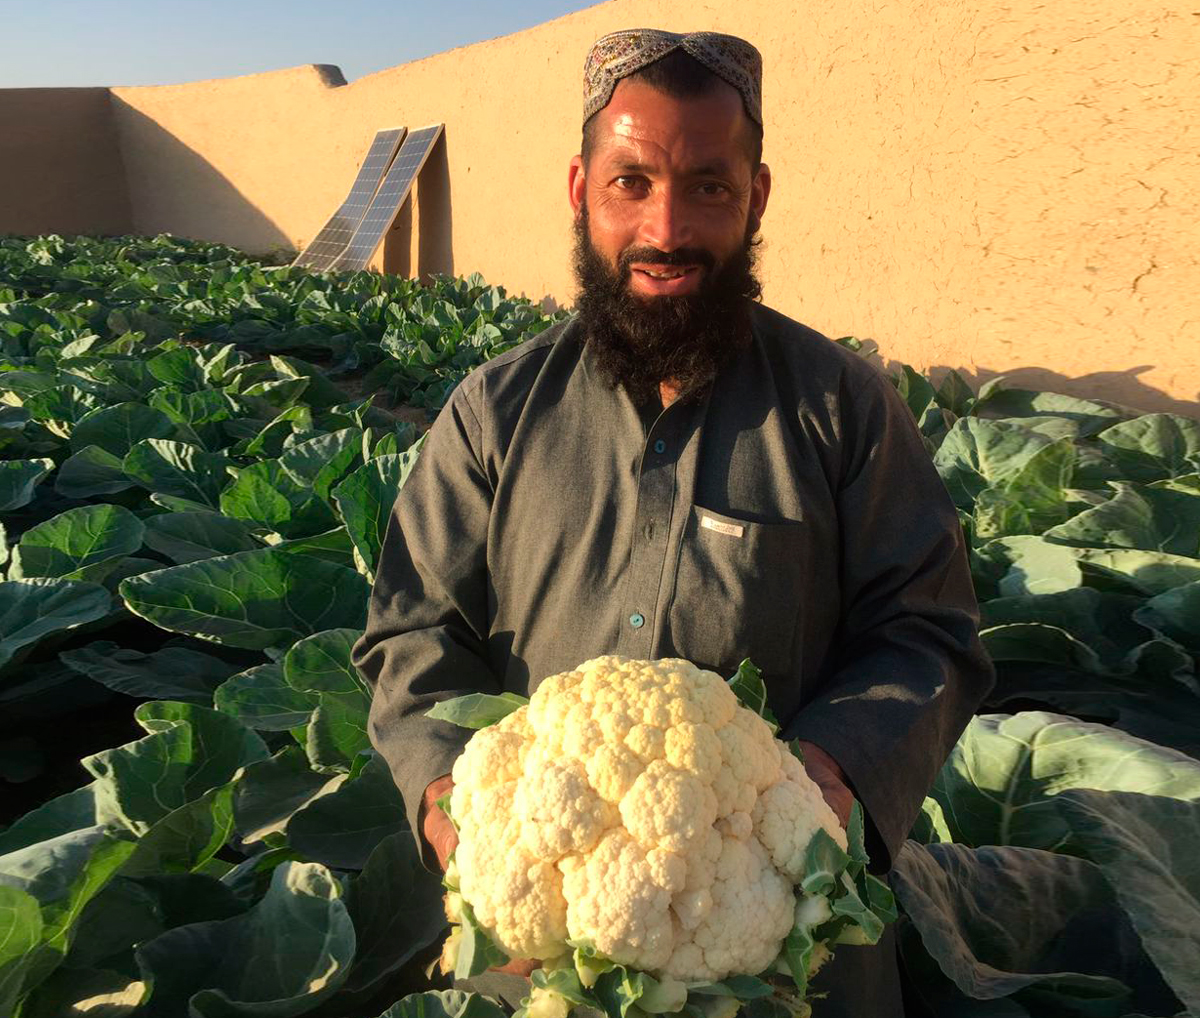 Gul Agha’s cauliflower crops